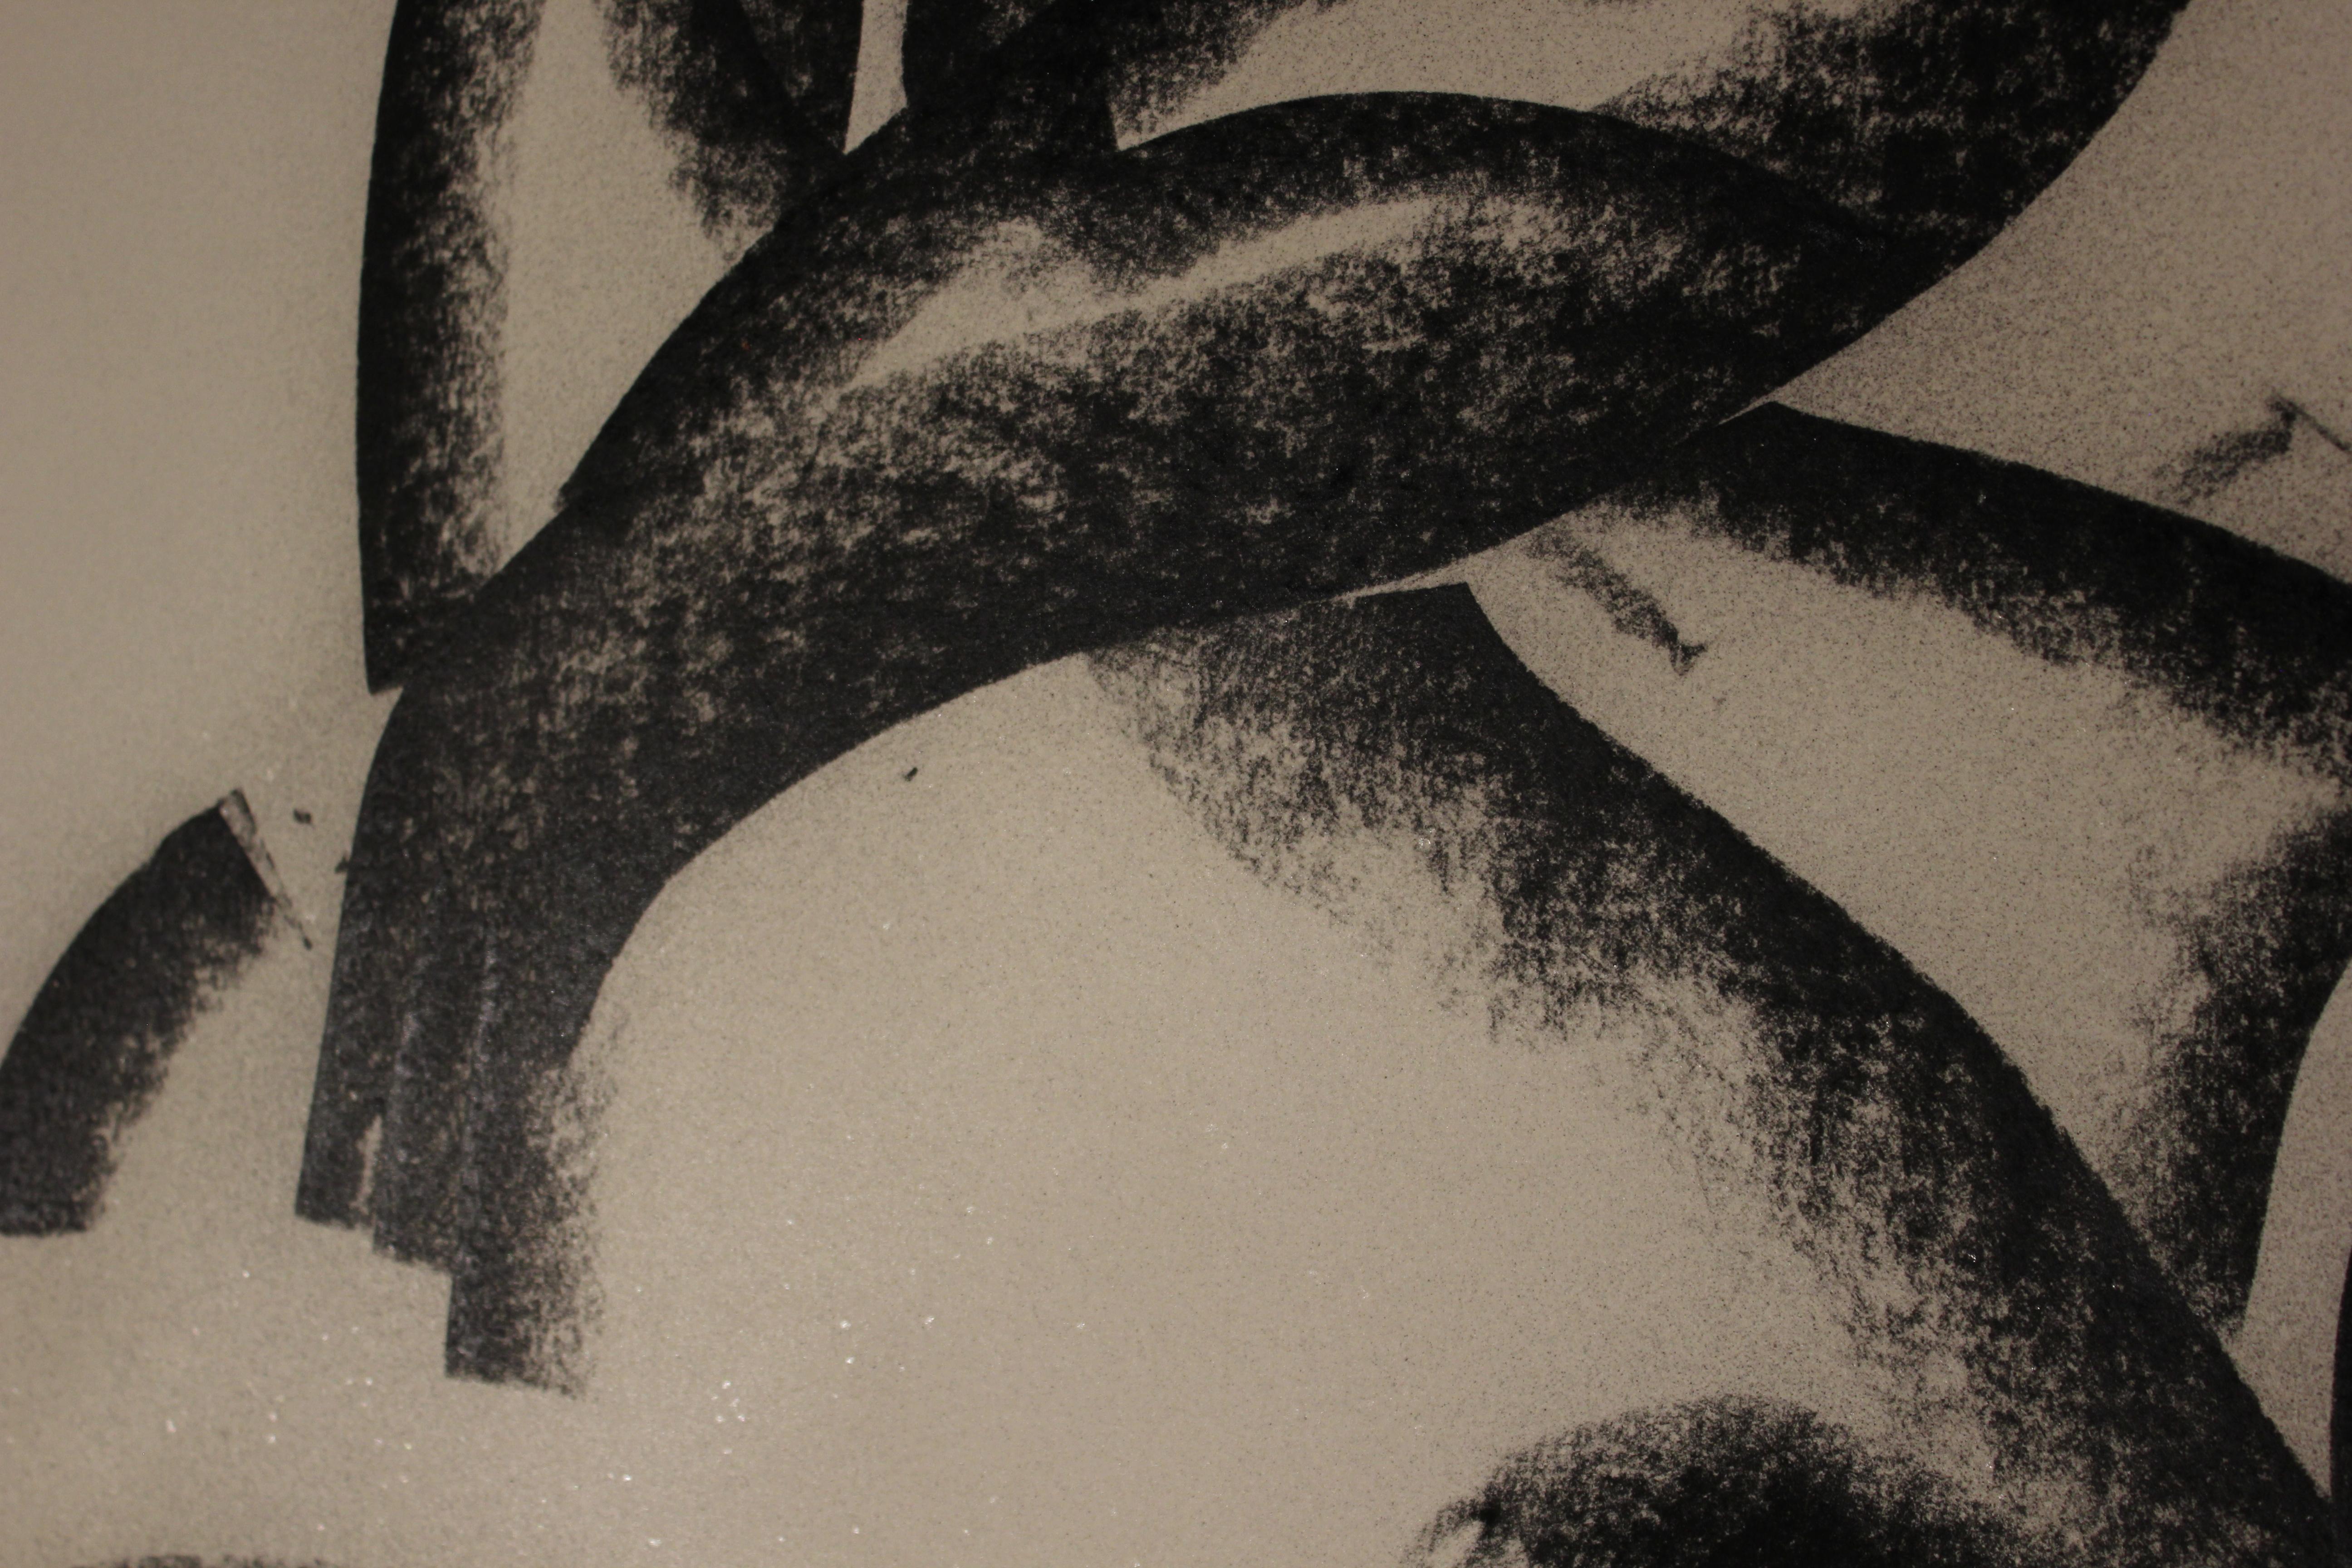 Das Schwarz-Weiß-Porträt einer auf ihren Absätzen sitzenden Frau in einem Stil:: der Abstraktion und Kubismus miteinander verbindet:: ähnlich wie das Werk von Fernand Leger. Signiert und datiert in der linken unteren Ecke. 

Biografie des Künstlers: